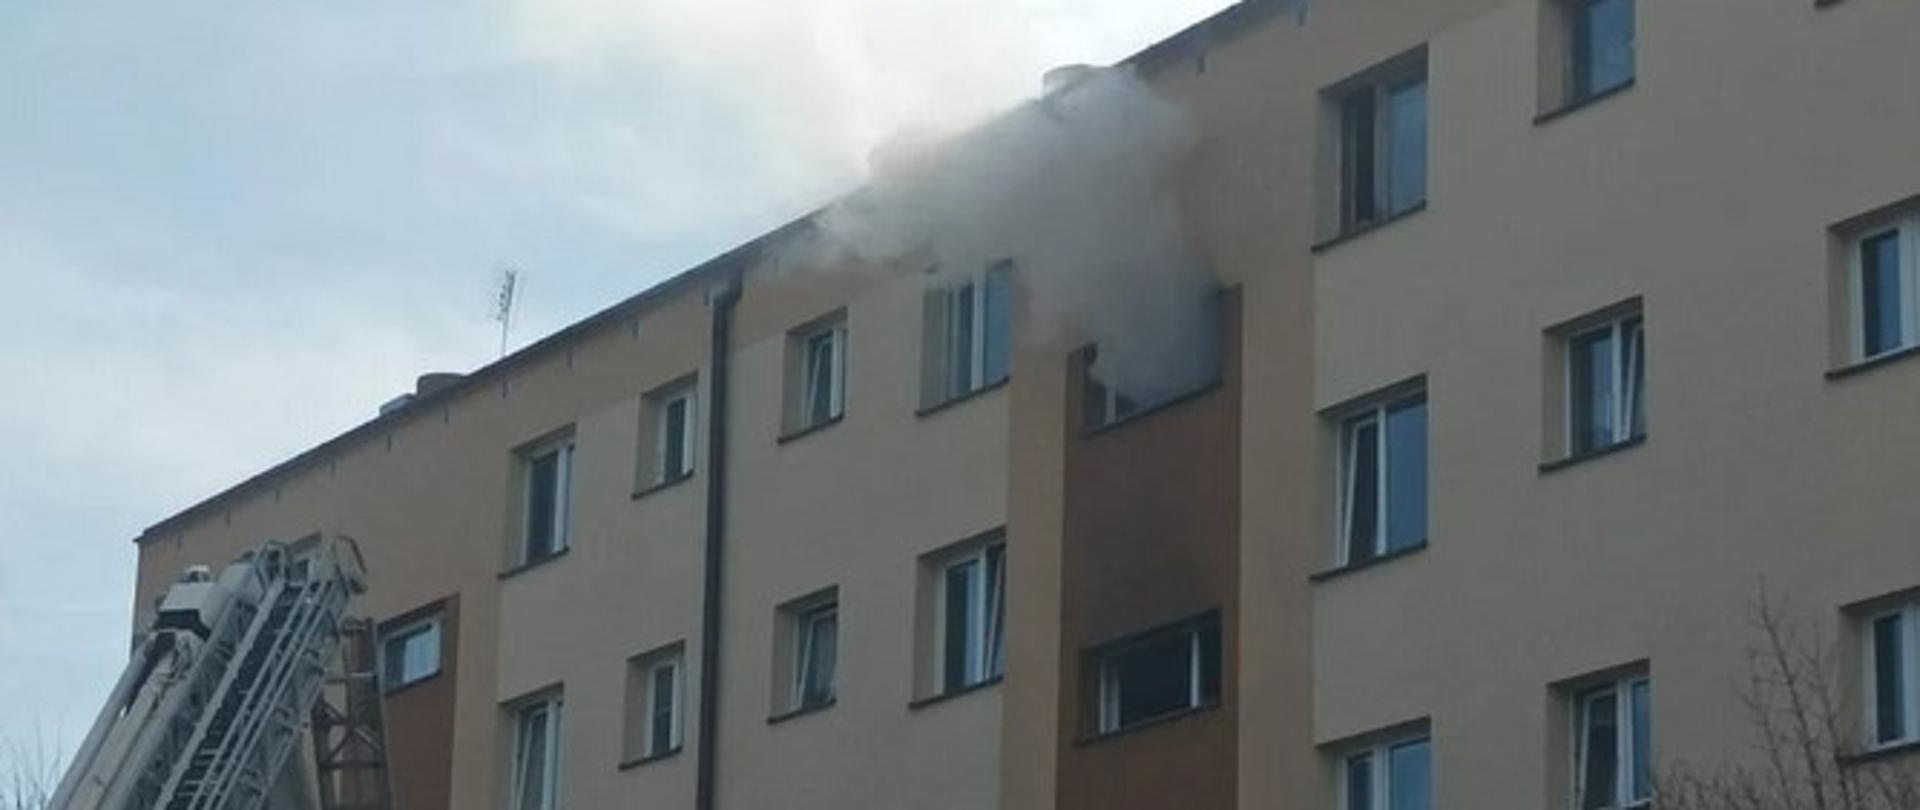 Pożar mieszkania na 4 piętrze w budynku wielorodzinnym